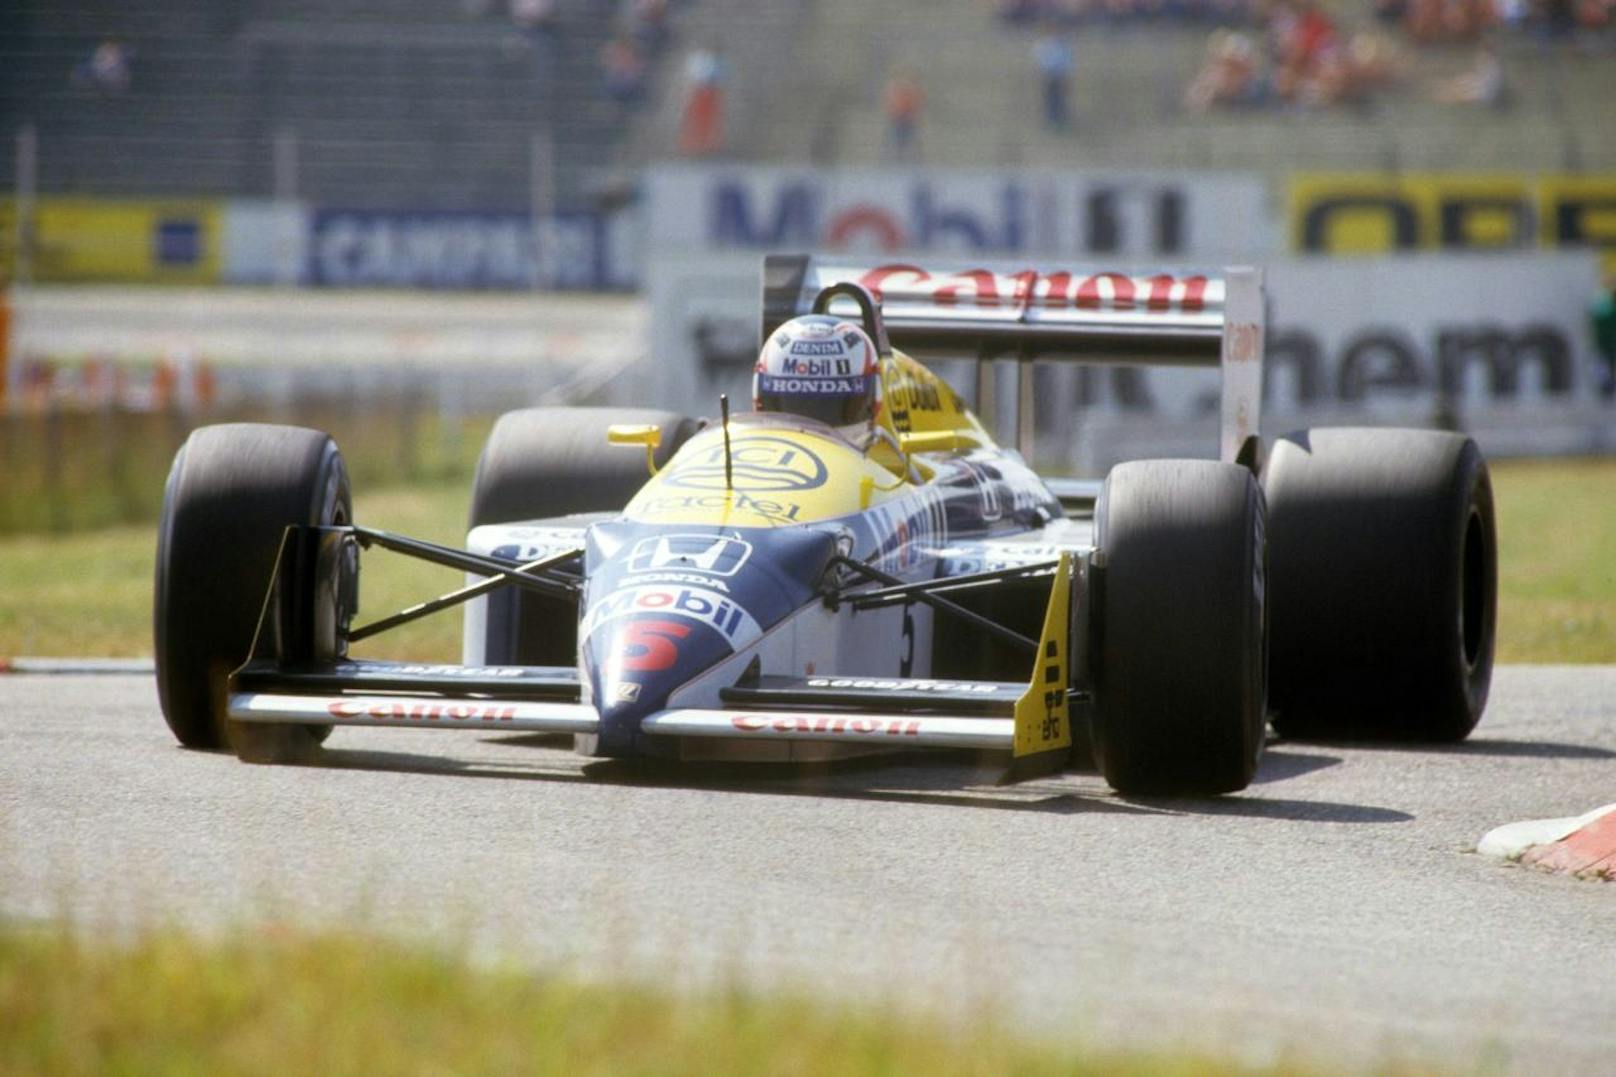 Den vorerst letzten Grand Prix auf dem alten Österreichring gewann Nigel Mansell auf Williams 1987. Beim anschließenden Jubel auf der Ladefläche eines Pick Ups krachte der Brite mit dem Kopf gegen eine Eisenstange.